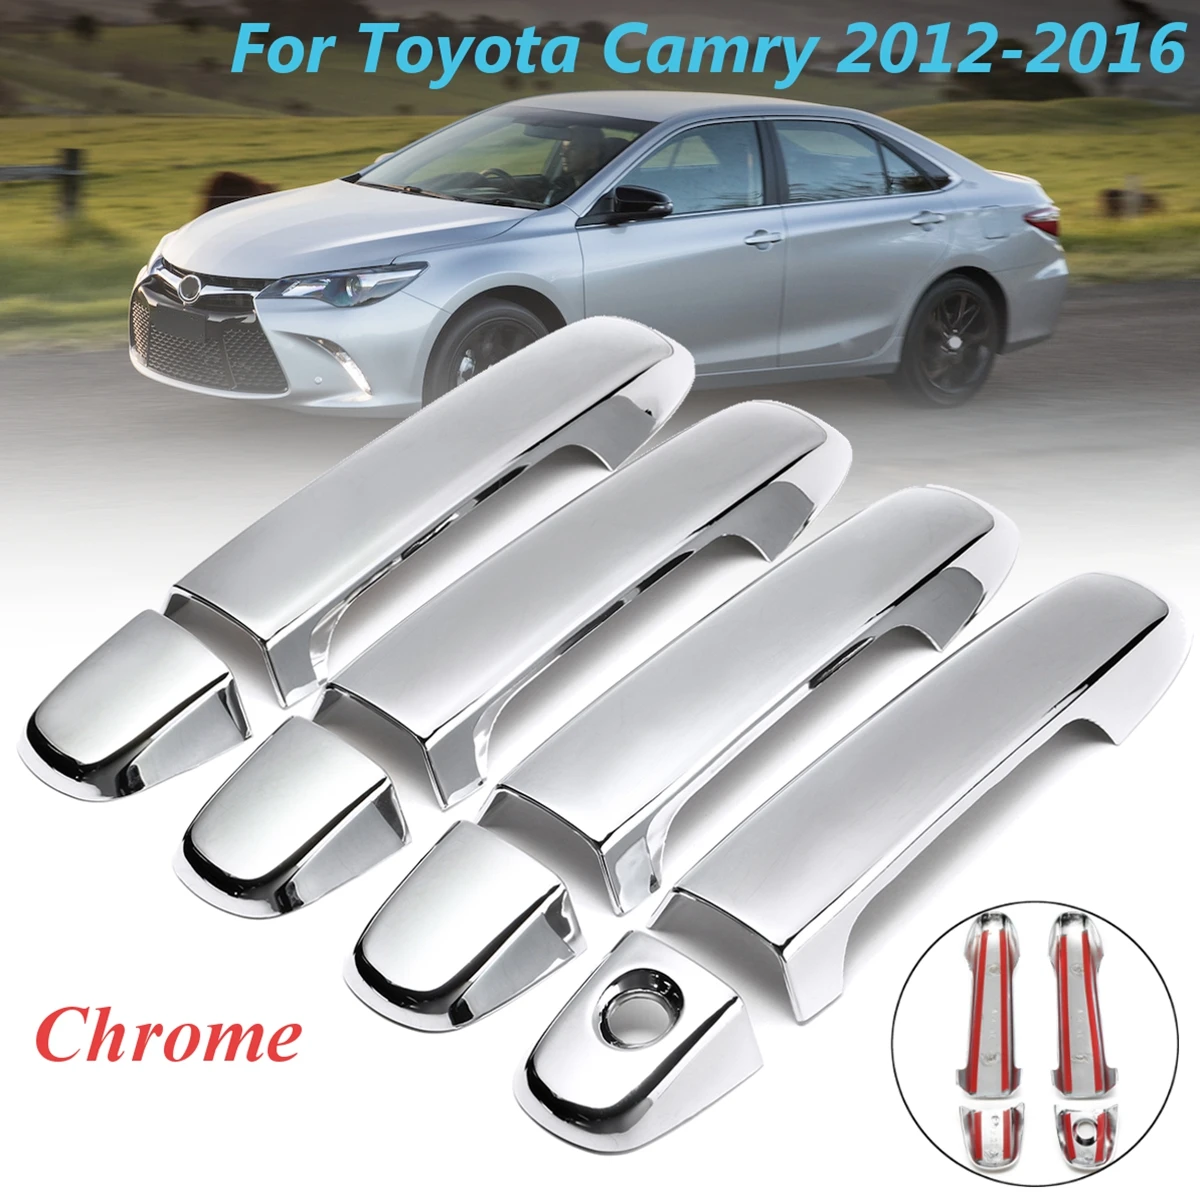 8 шт. 1 комплект ABS хромированные 4 дверные ручки крышки для Toyota Camry 2012 2013 автомобильный Стайлинг рамка отделка наклейки аксессуары